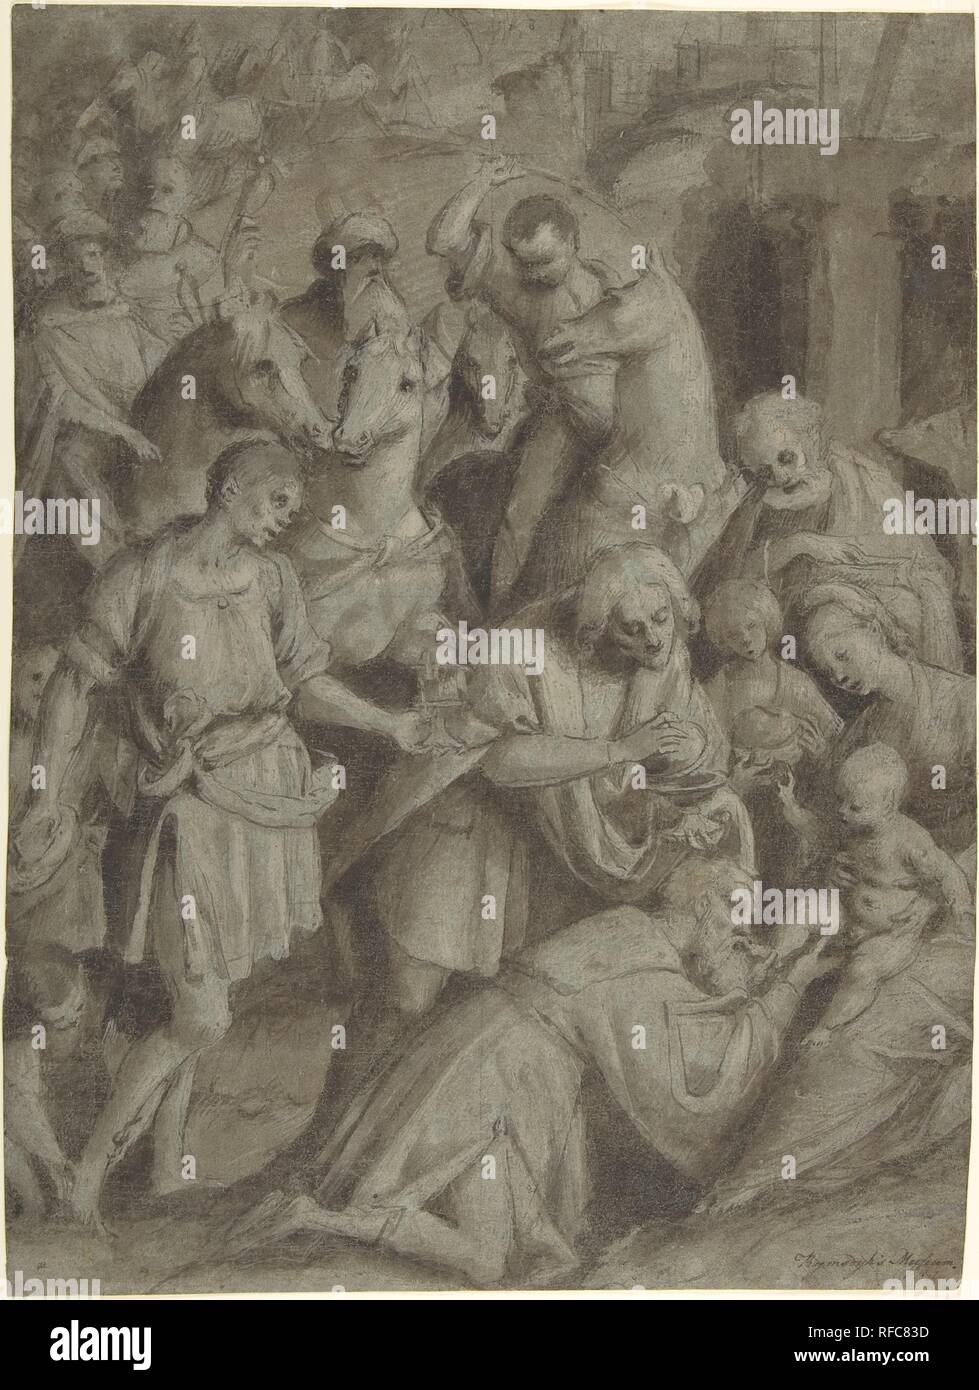 L Adorazione dei Magi. Artista: Bernardino Lanino (italiano, Vercelli o Mortara 1509/13- 1582/83 Vercelli). Dimensioni: 15 x 11-1/4 in. (38,1 x 28,5 cm). Data: 1553. Museo: Metropolitan Museum of Art di New York, Stati Uniti d'America. Foto Stock